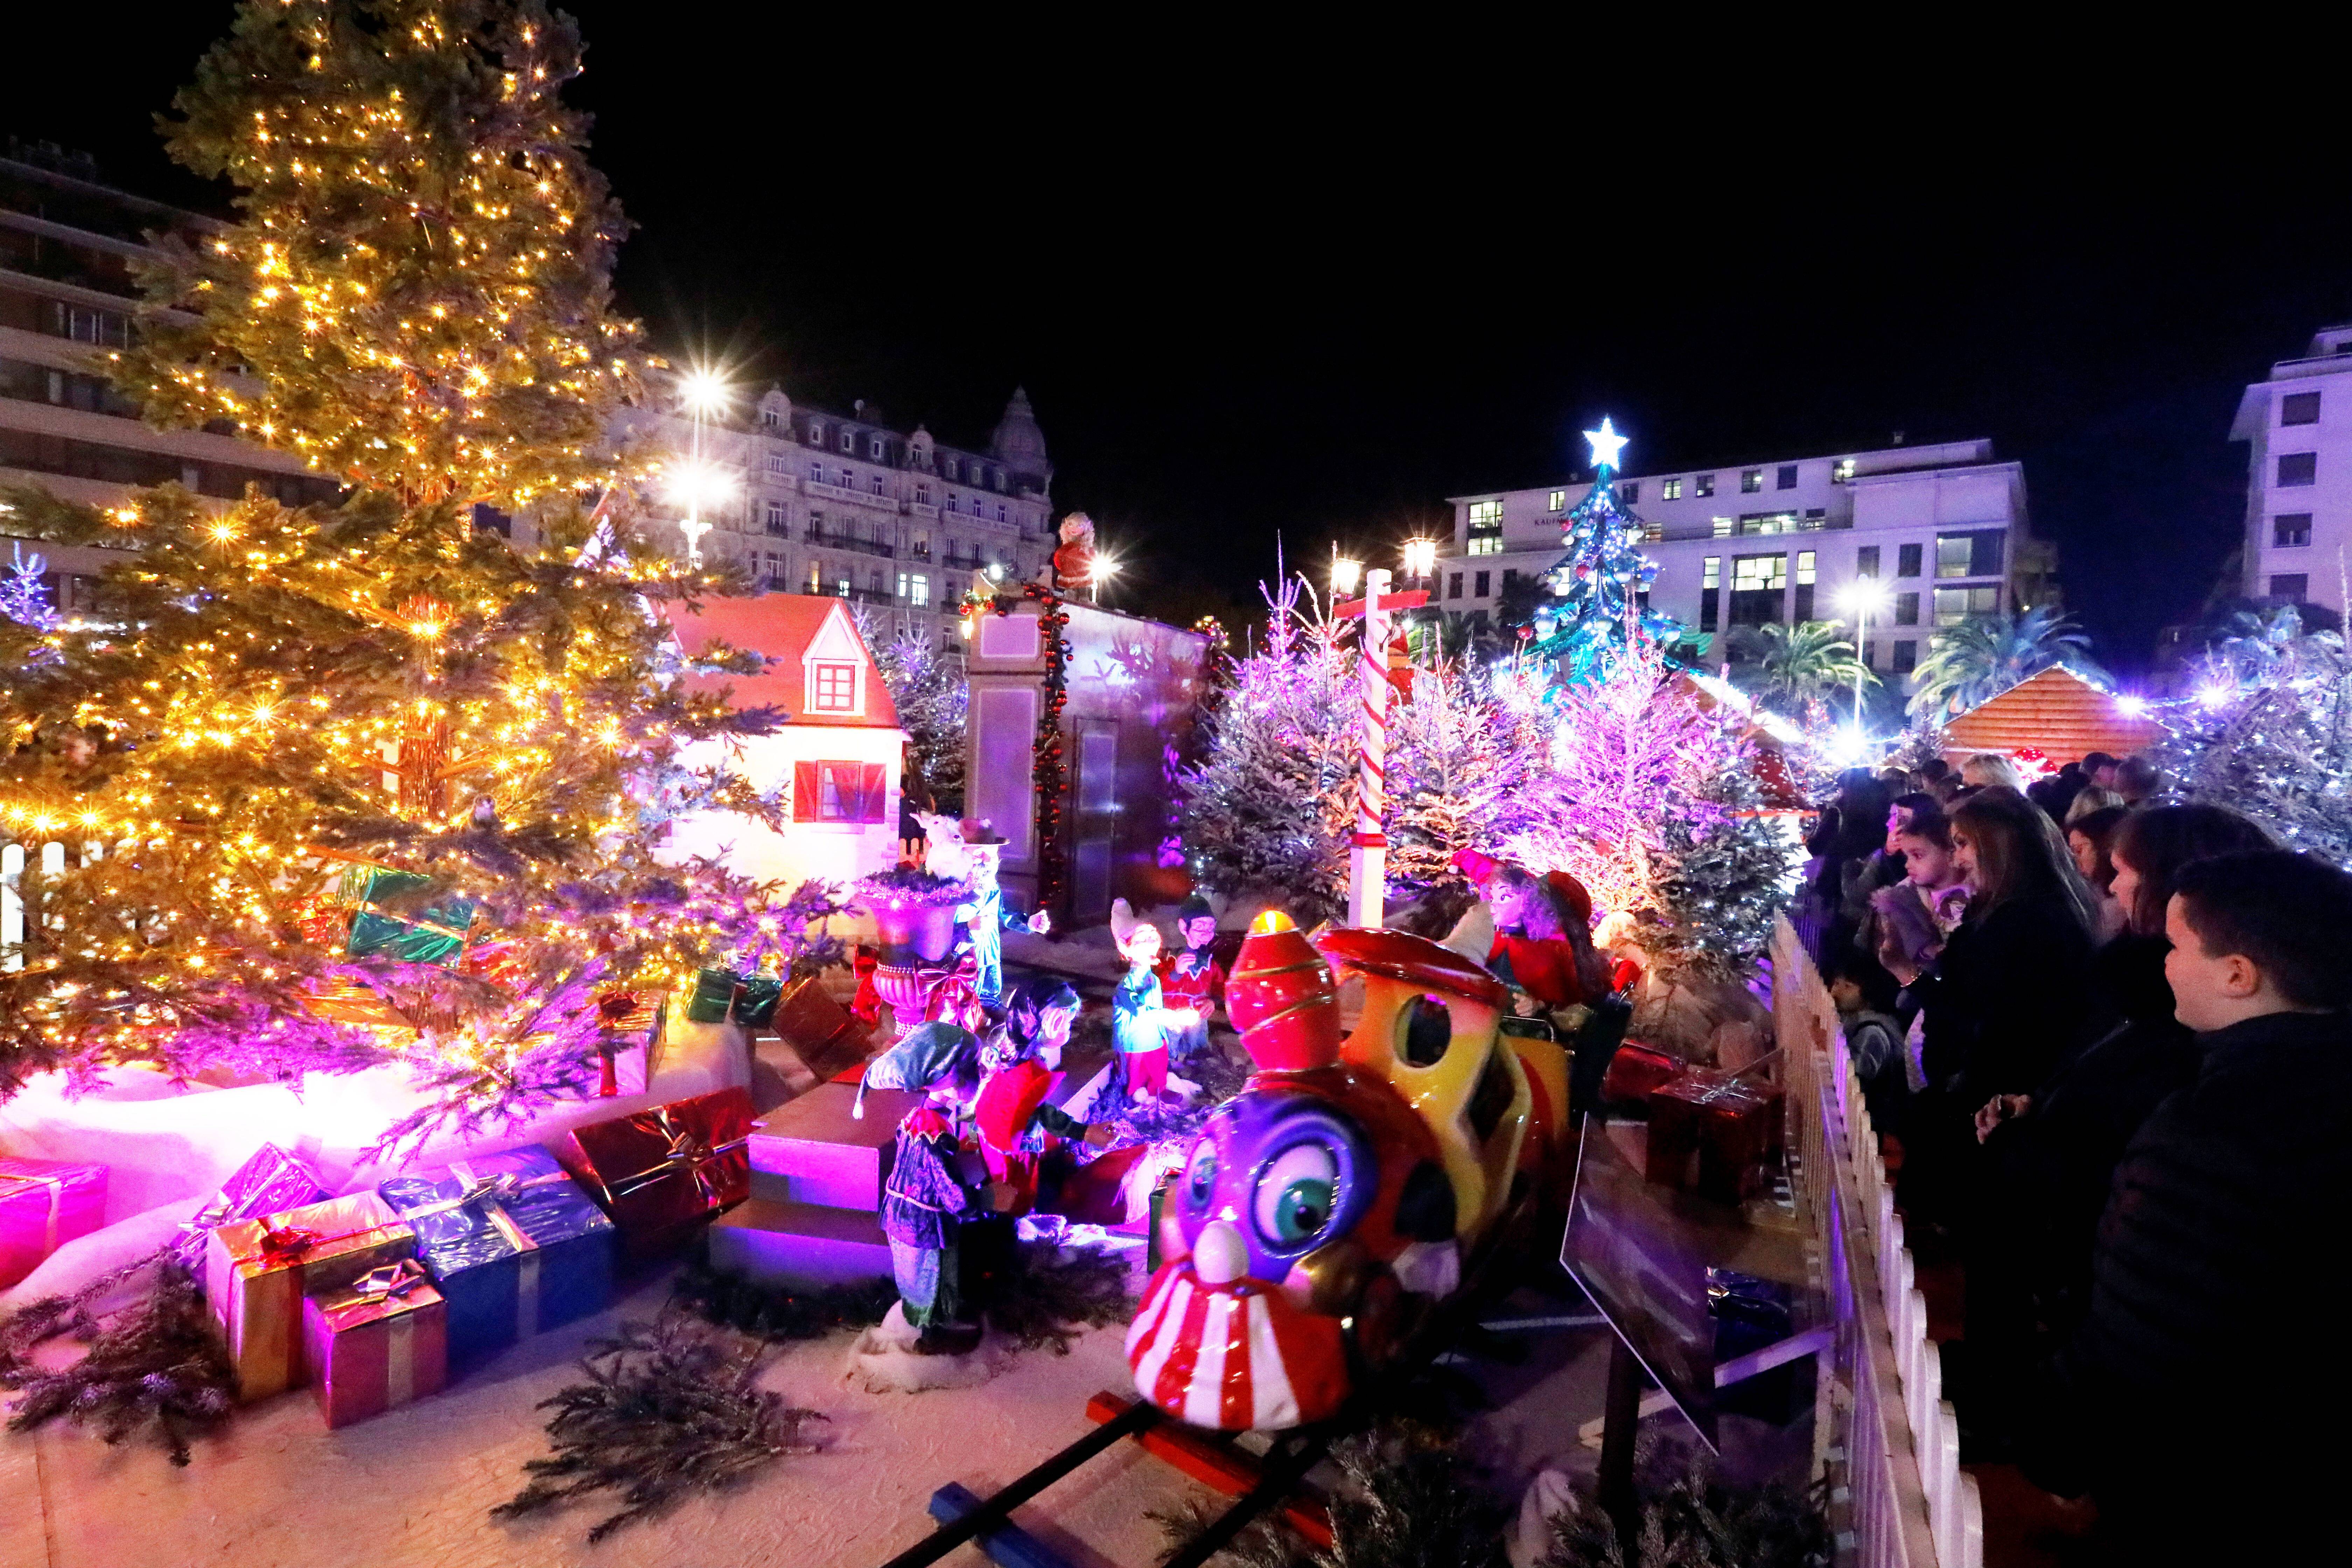 A Toulon, le village de Noël est prêt à accueillir 200.000 visiteurs -  Var-Matin